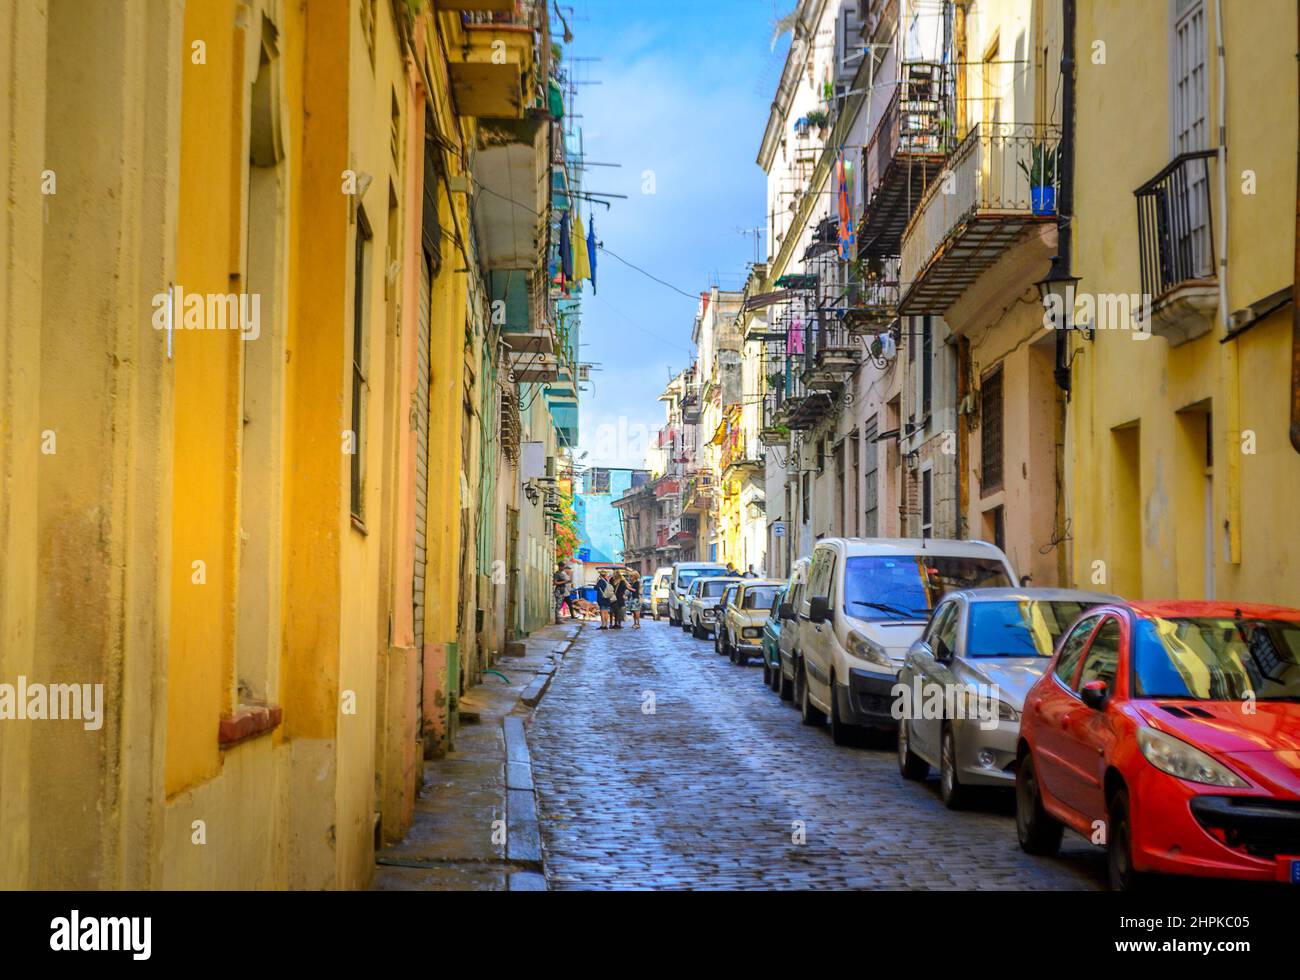 Vieille rue de la ville historique de la Havane, Cuba Banque D'Images